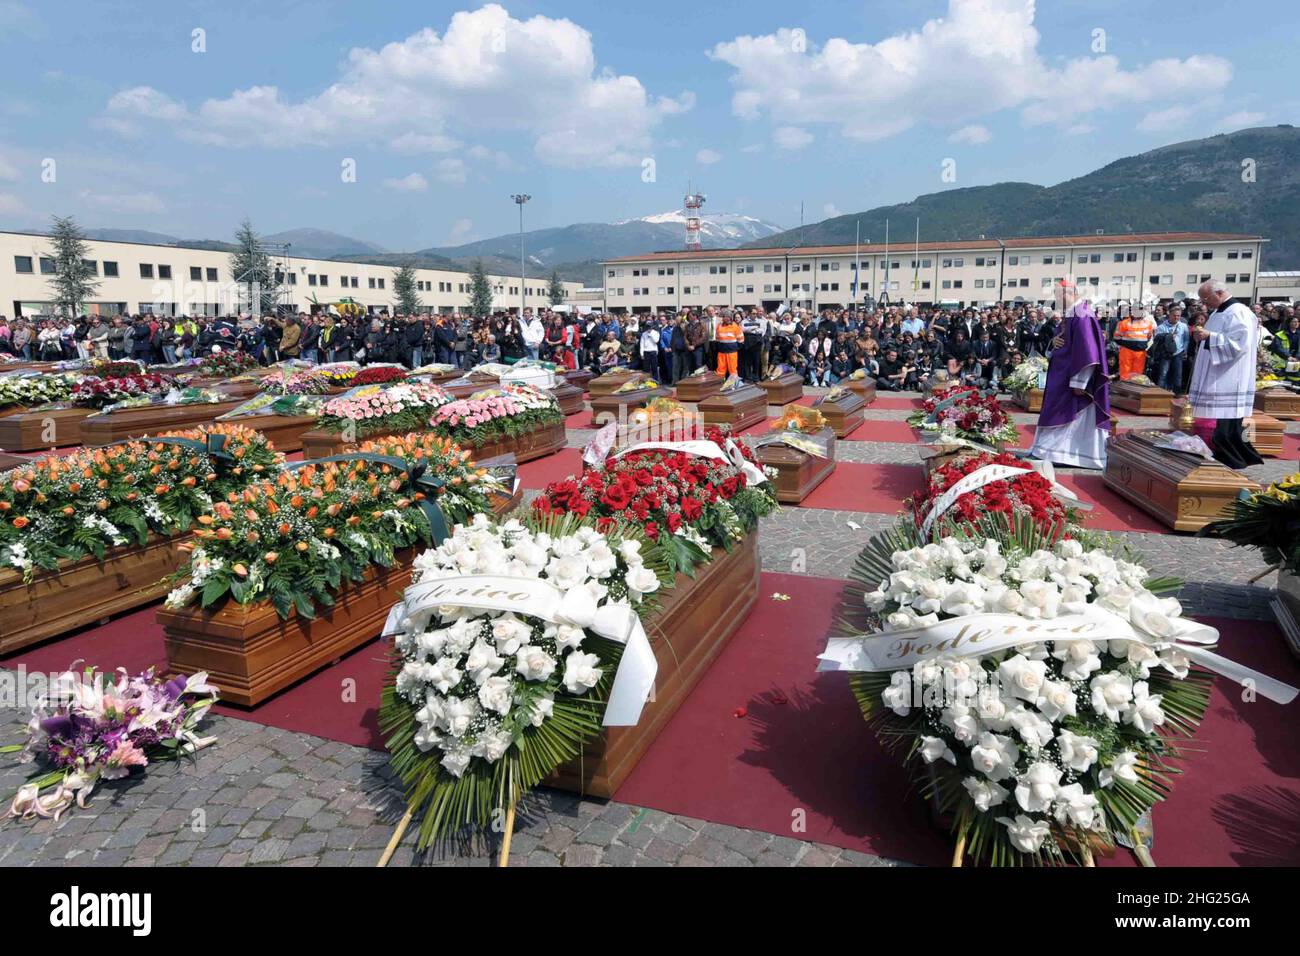 El Cardenal Tarciso Bertone realiza un funeral masivo al aire libre para unas 200 víctimas del terremoto de L'Aquila Foto de stock